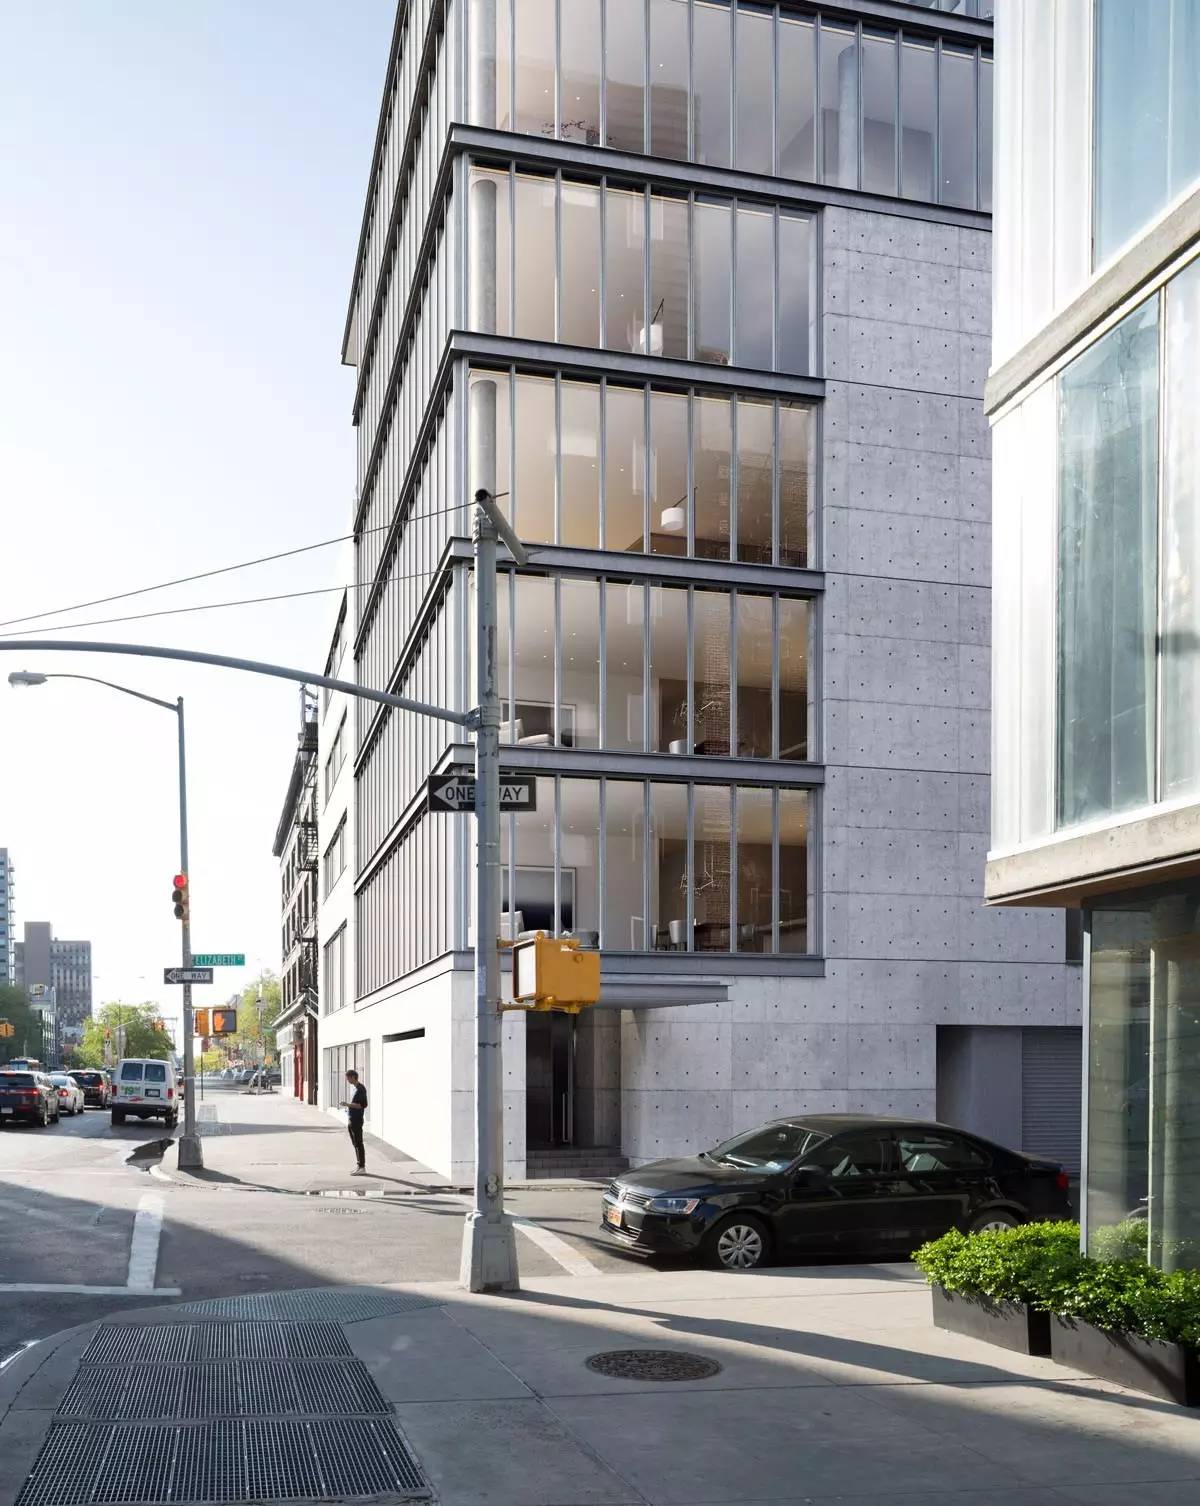 安藤忠雄设计的公寓楼,顶层复式效果图公开,售价24亿